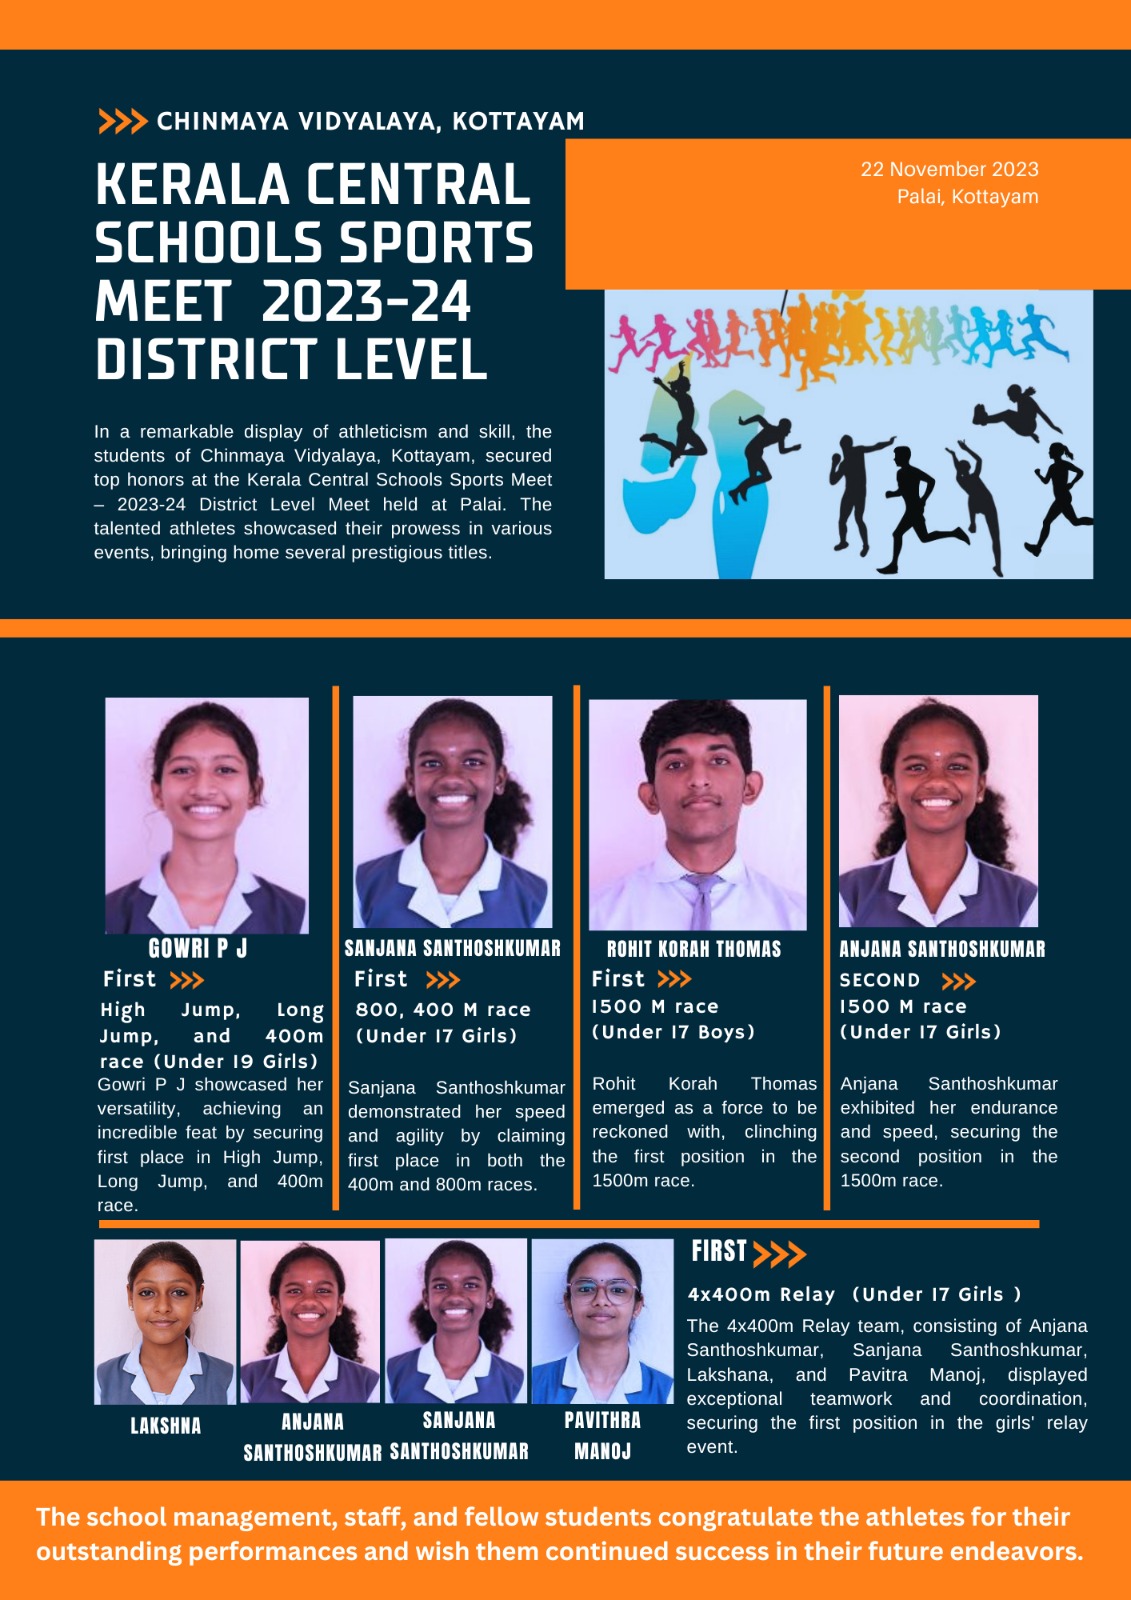 Chinmaya Vidyalaya, Kottayam Shines at Kerala Central Schools Sports Meet  2023-24 District Level Meet in Palai